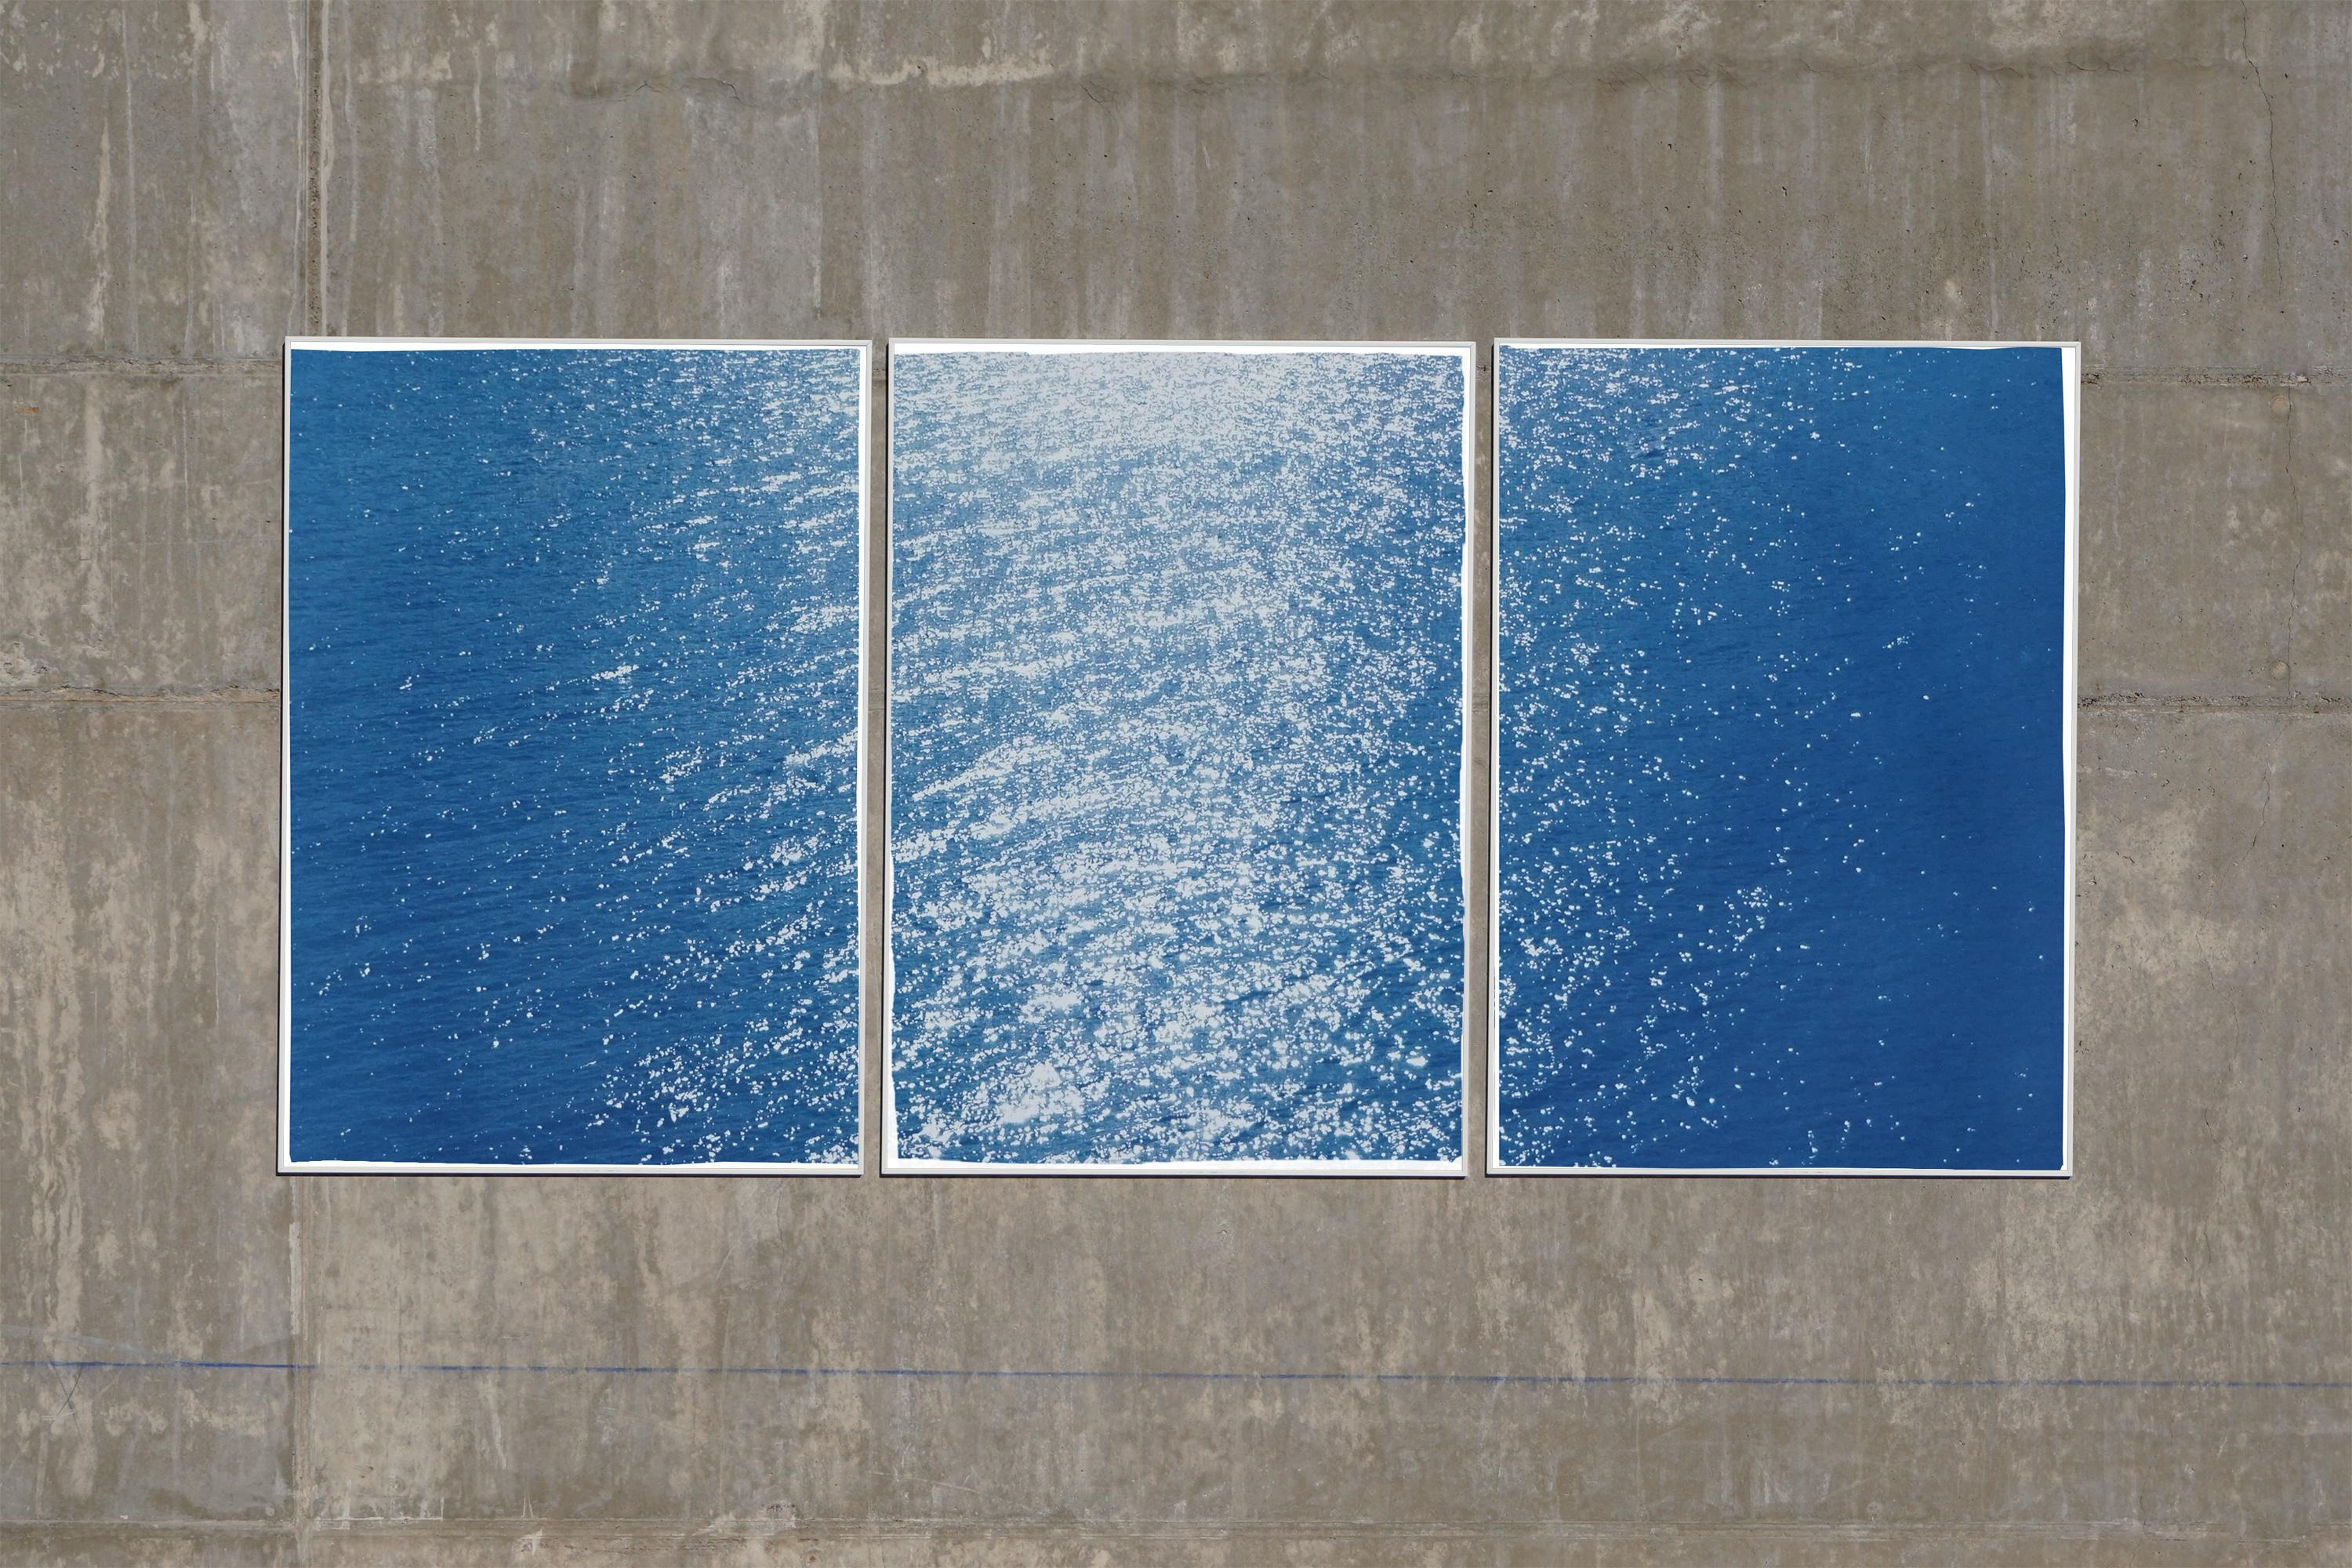 Amalfi Coast Seascape, Nautical Triptych Cyanotype on Paper, Sunrise Bay, Blue - Minimalist Photograph by Kind of Cyan